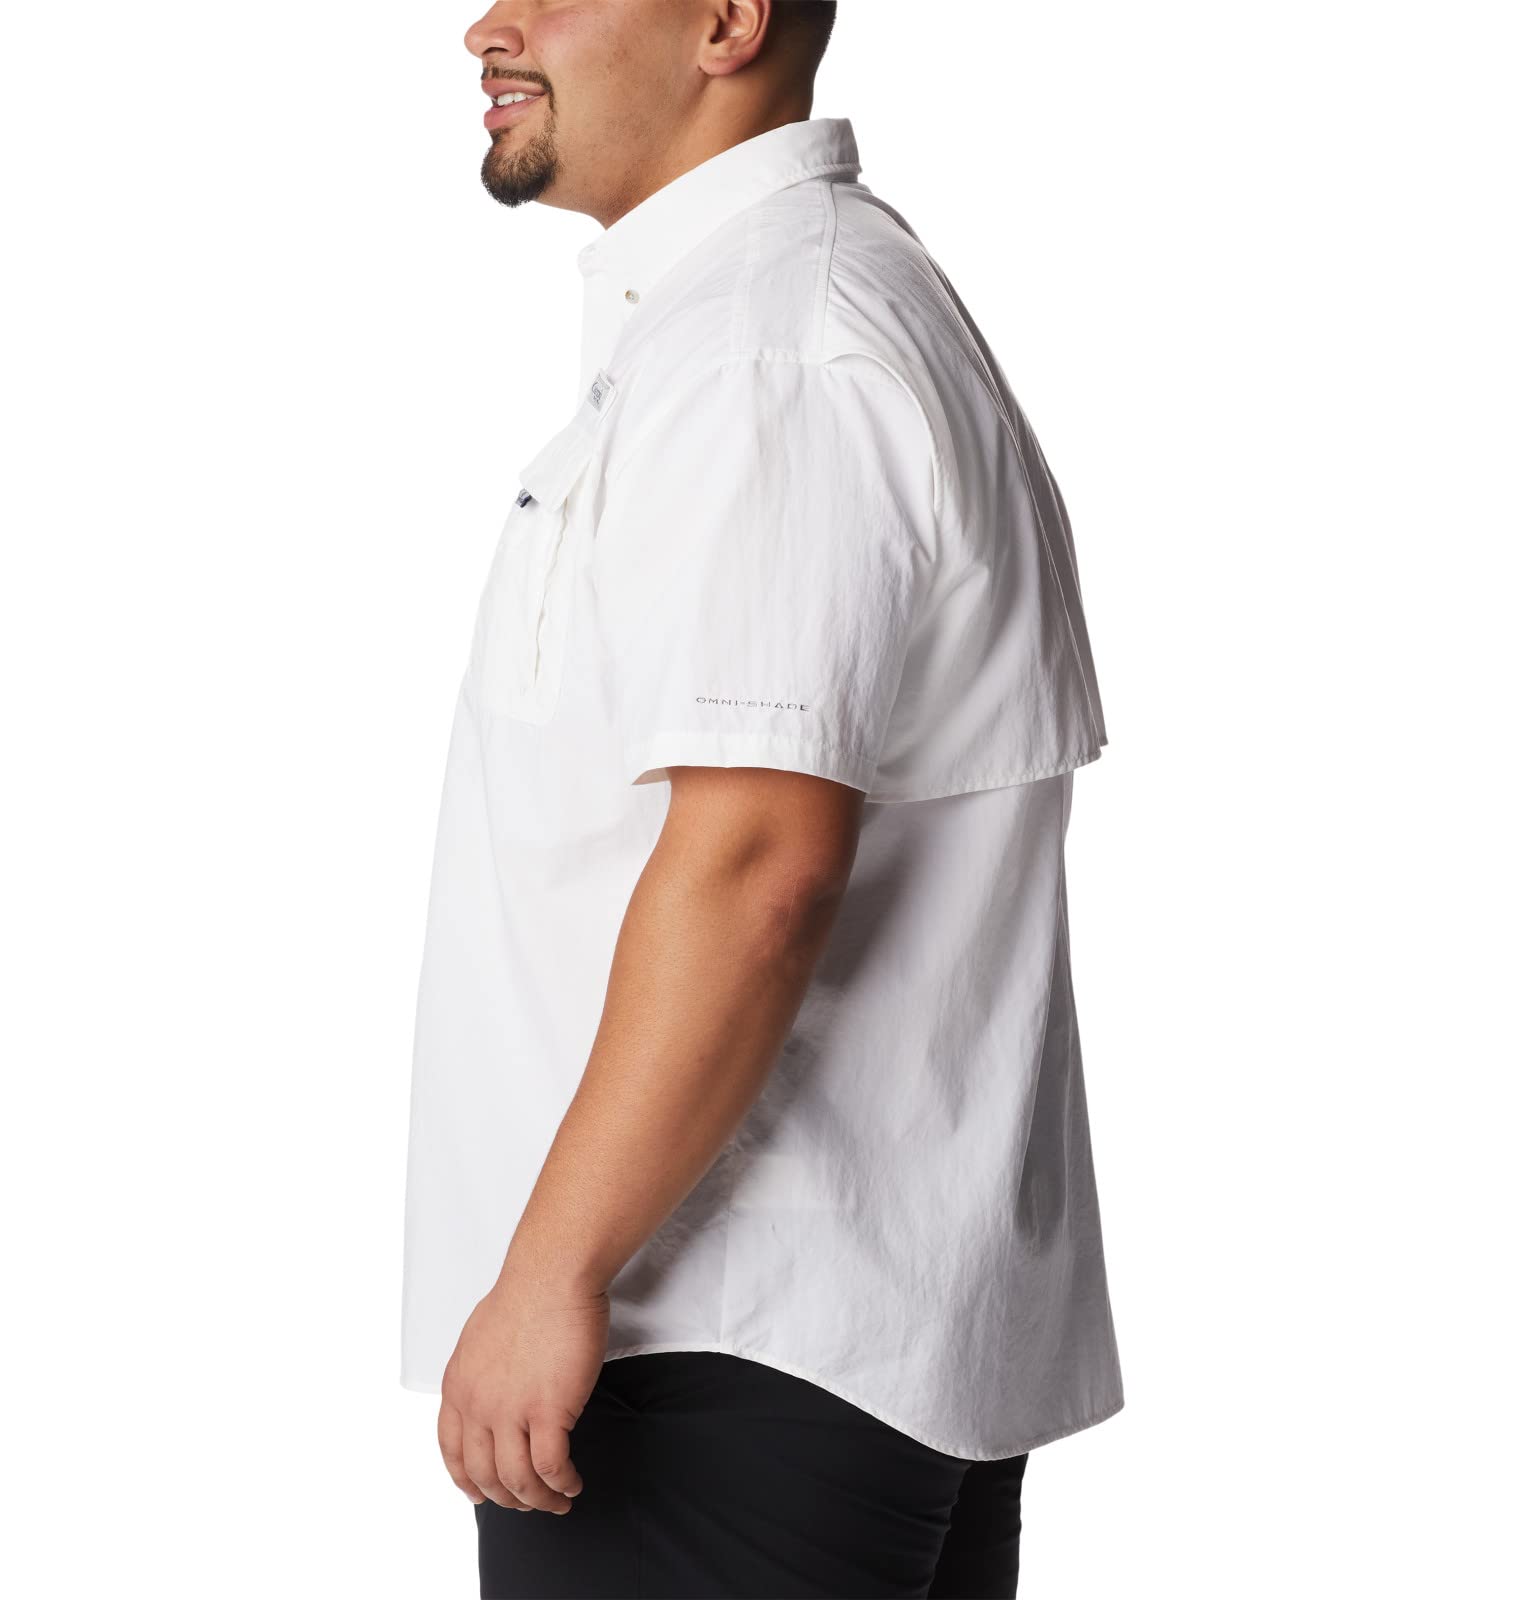 Columbia Men's Bahama II UPF 30 Short Sleeve PFG Fishing Shirt, White, Medium